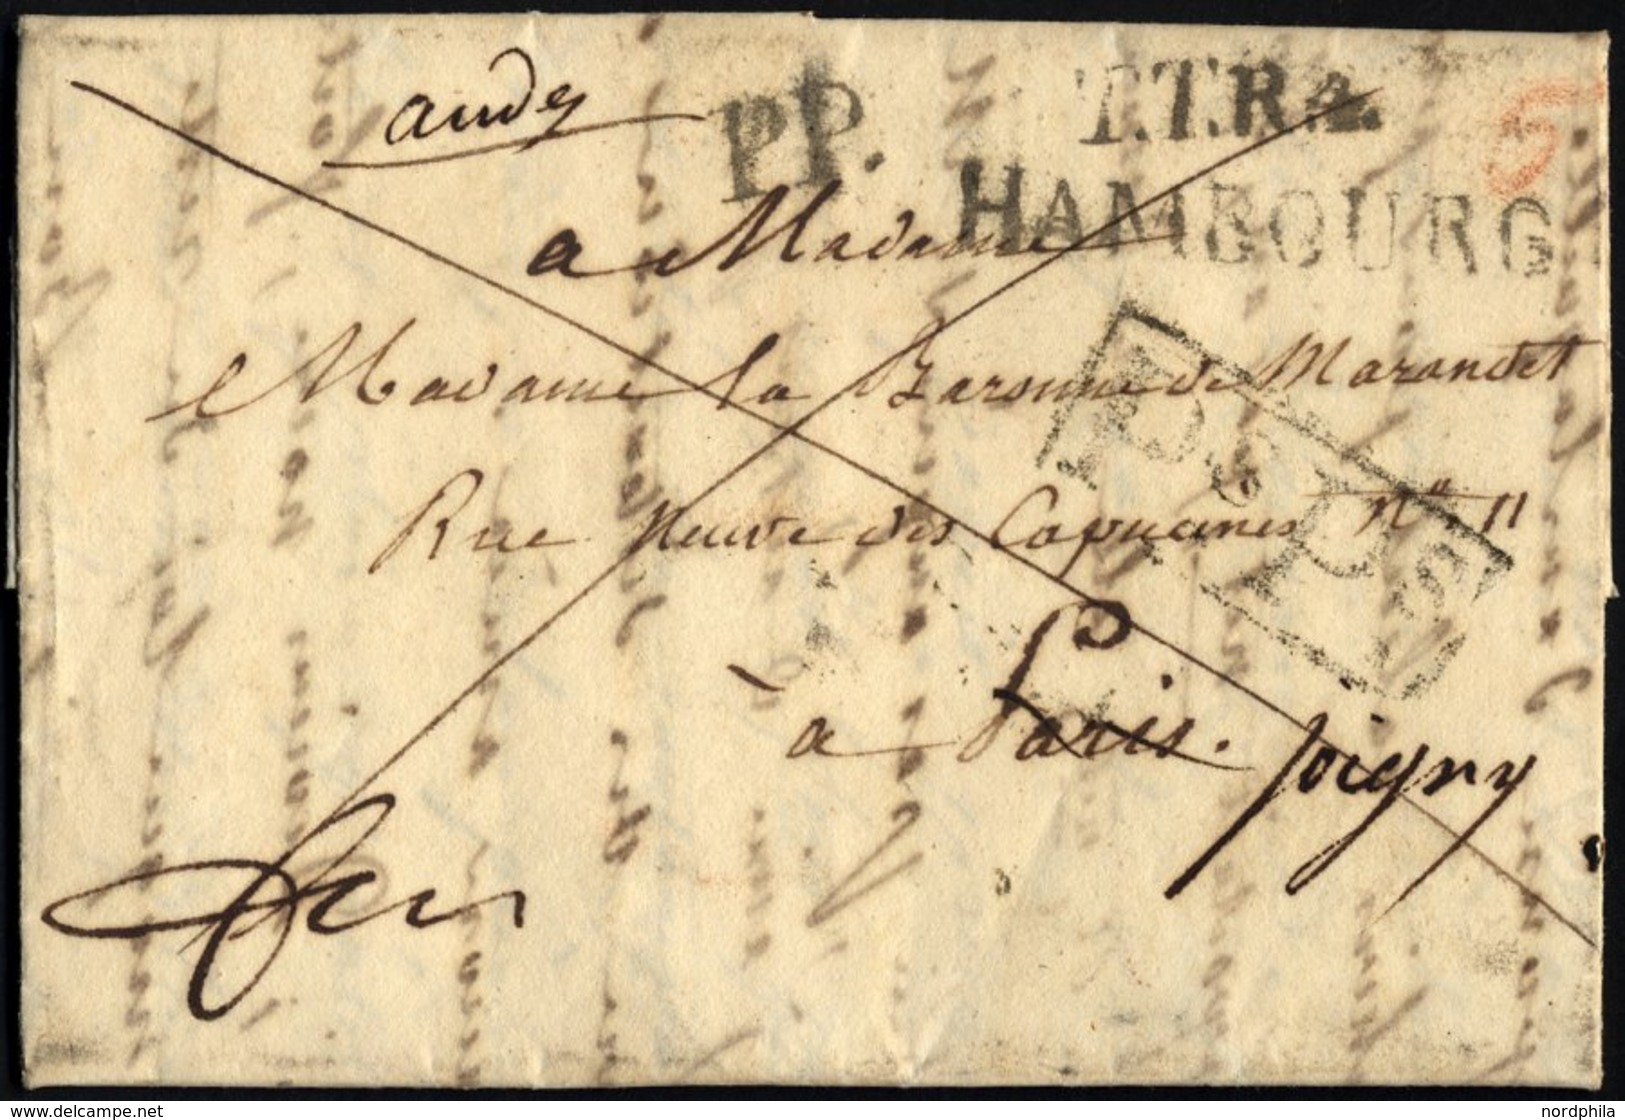 HAMBURG - GRENZÜBERGANGSSTEMPEL 1820, PS PS, R1 Auf Brief Von Hamburg (L2 T.T.R.4 HAMBOURG) Nach Paris, Diverse Weitere  - Vorphilatelie